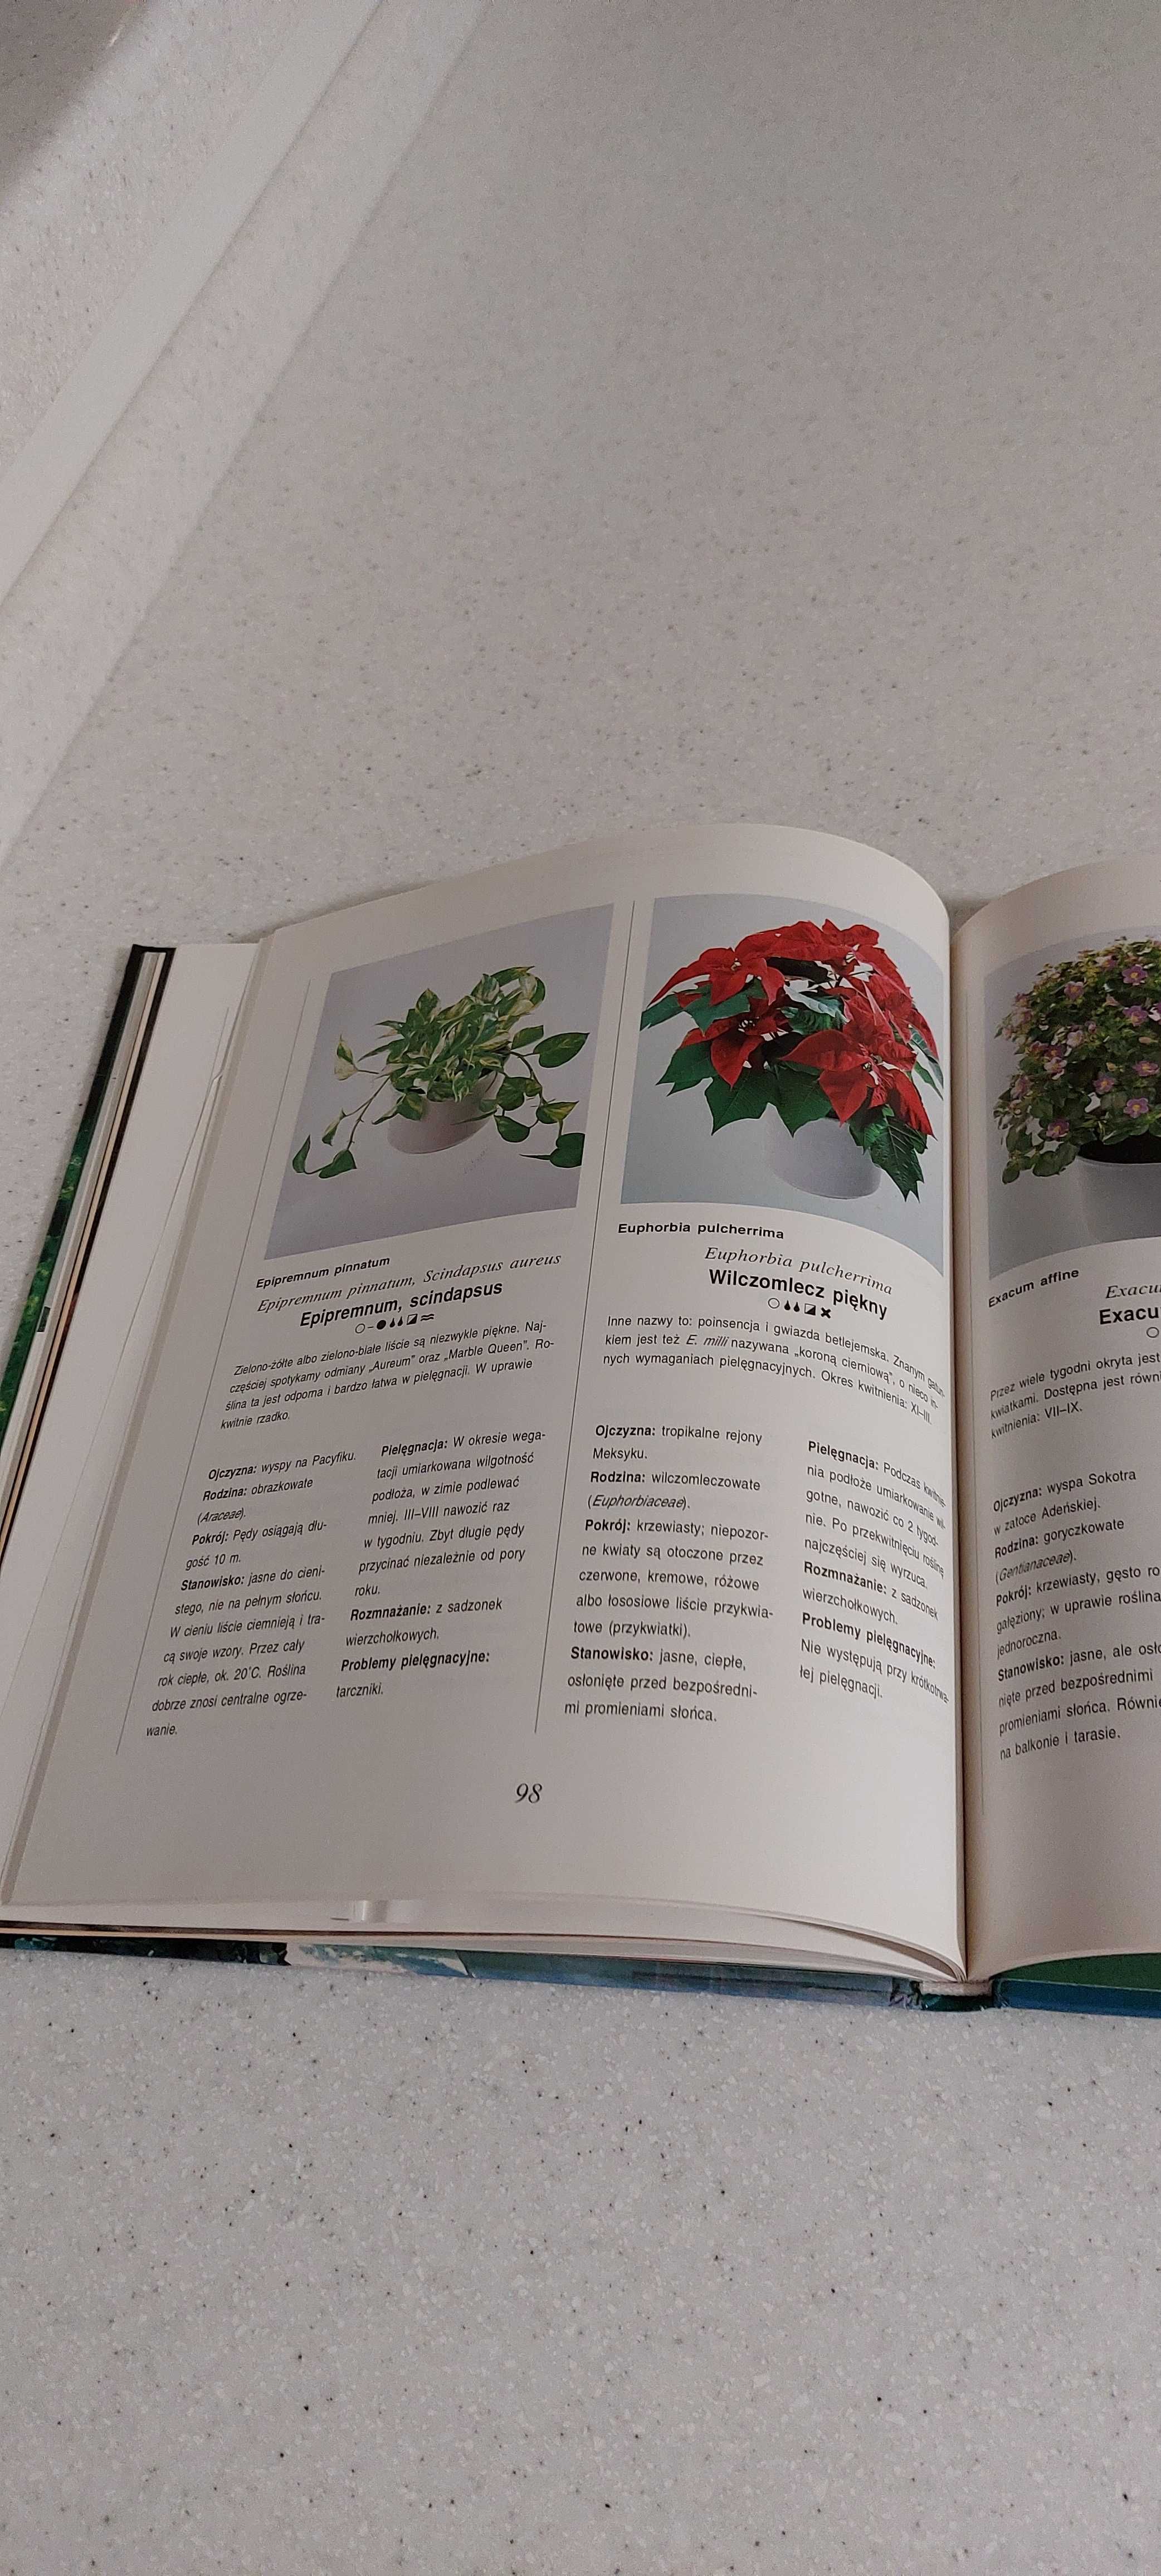 Książka o pielęgnacji hodowli roślin domowych "Mieszkać wśród zieleni"